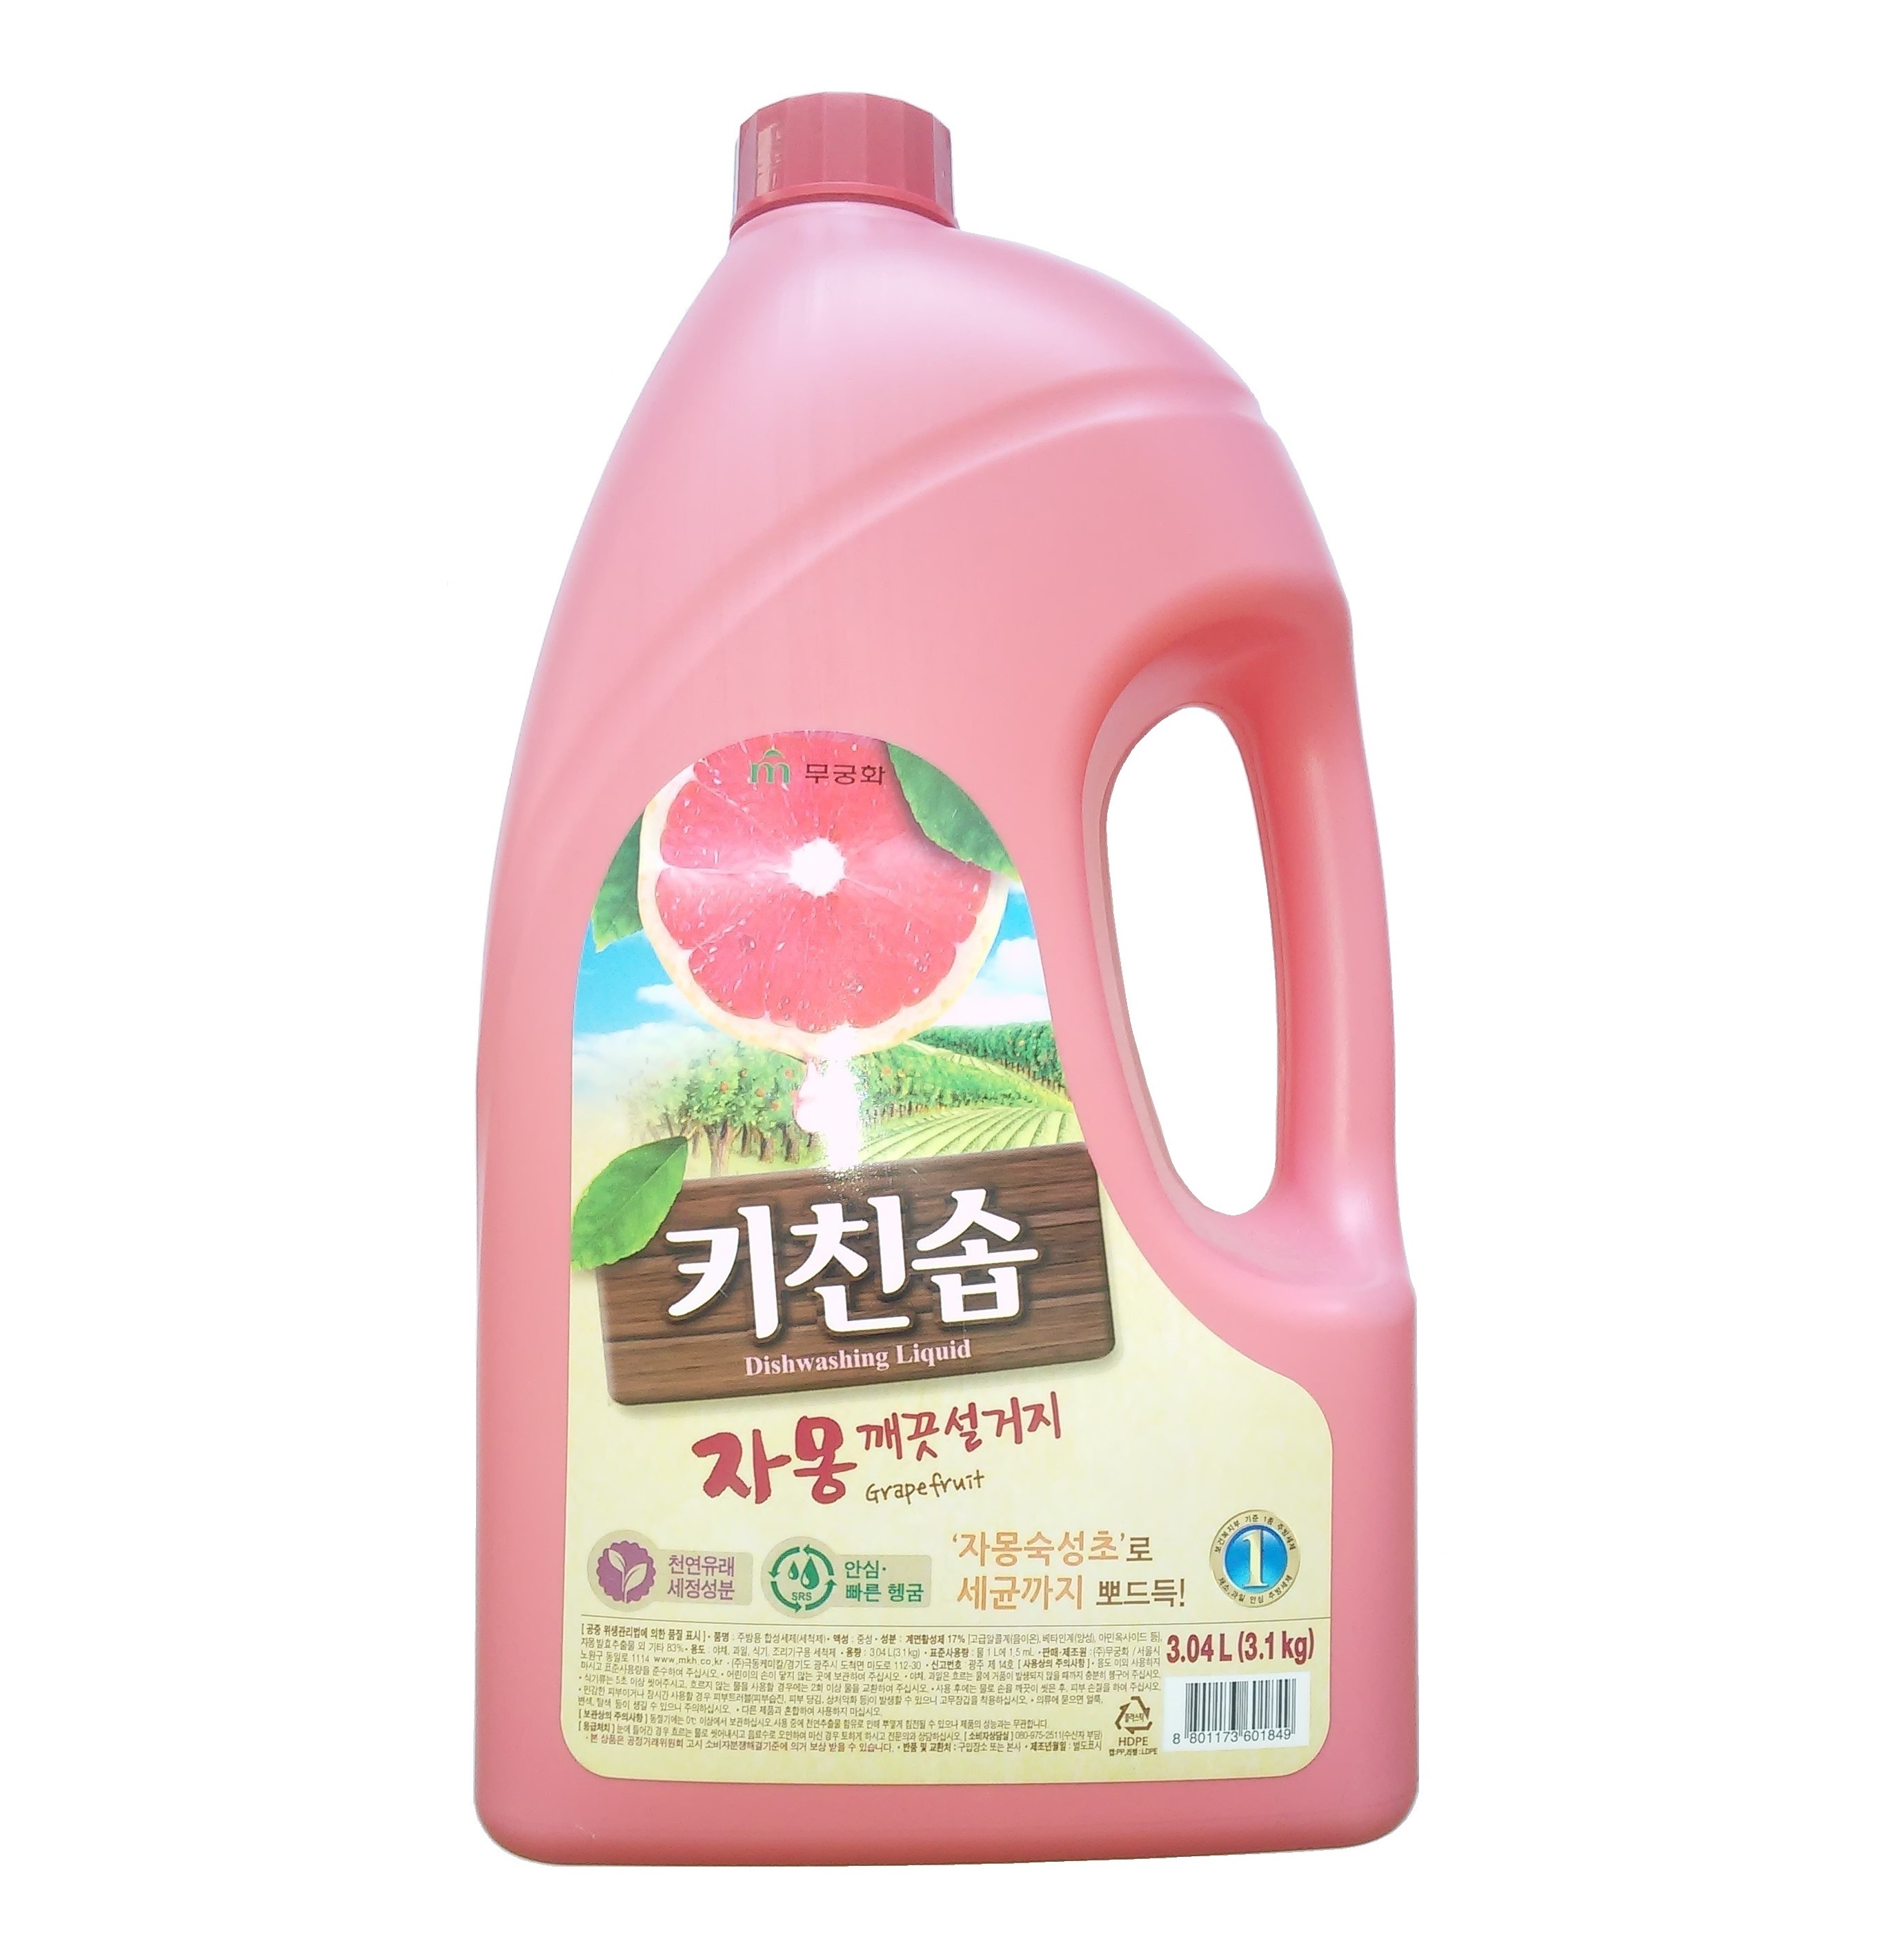 Корейское средство посуды. Корейская бытовая химия Mukunghwa. Корейское средство для посуды. Японское средство для мытья посуды и фруктов. Моющее средство для посуды Корея.